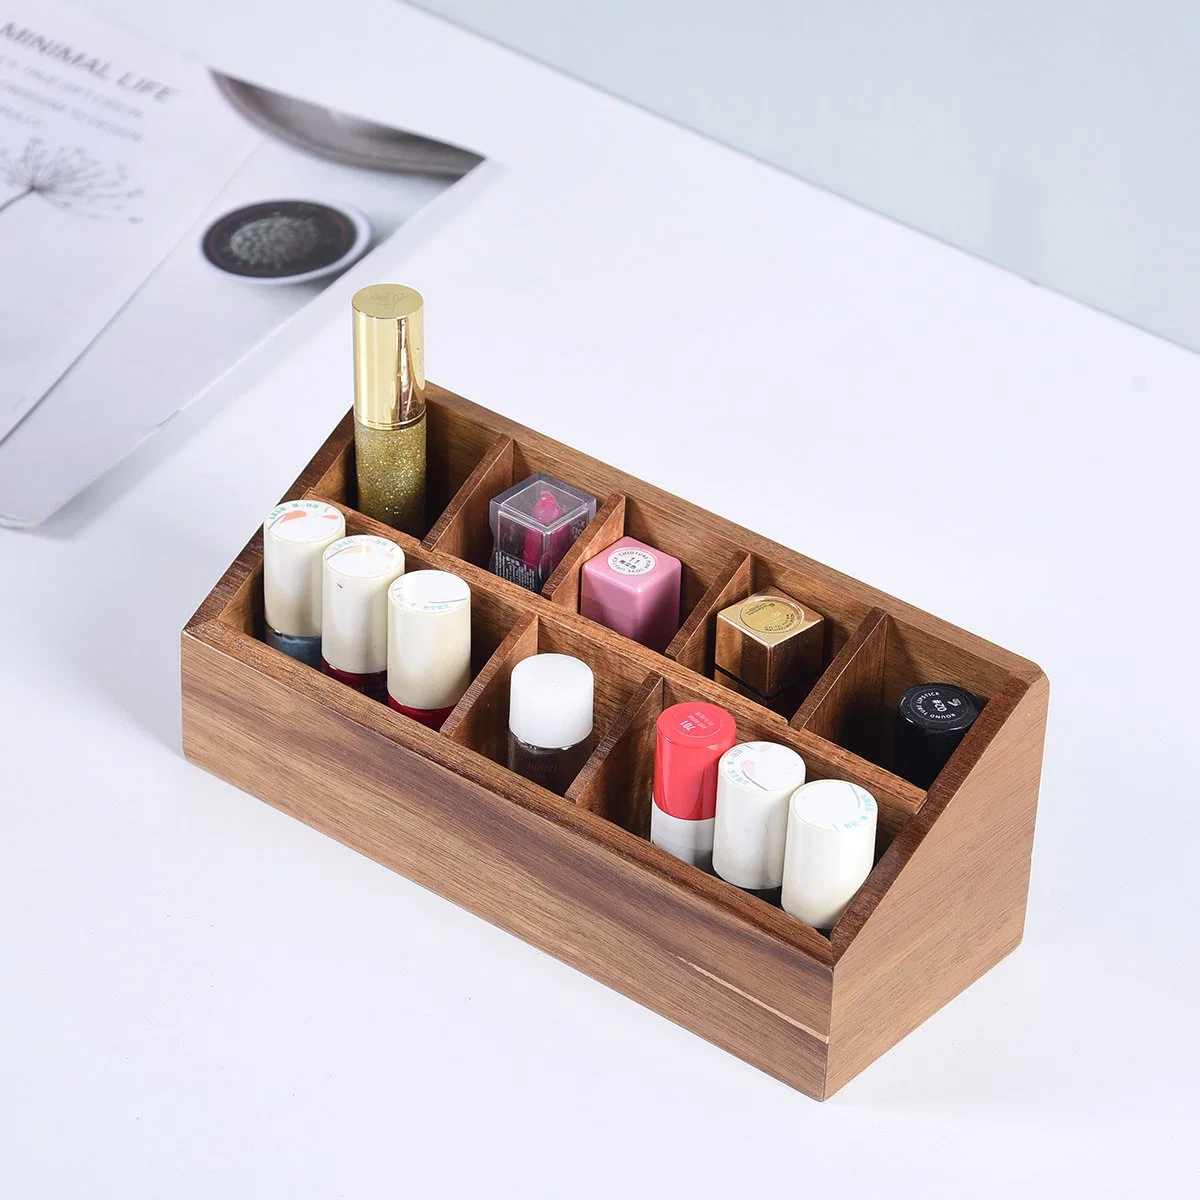 Caixa multifuncional para maquilhagem em madeira com organizador de cosméticos Bamboo, com 8 compartimentos de arrumação.